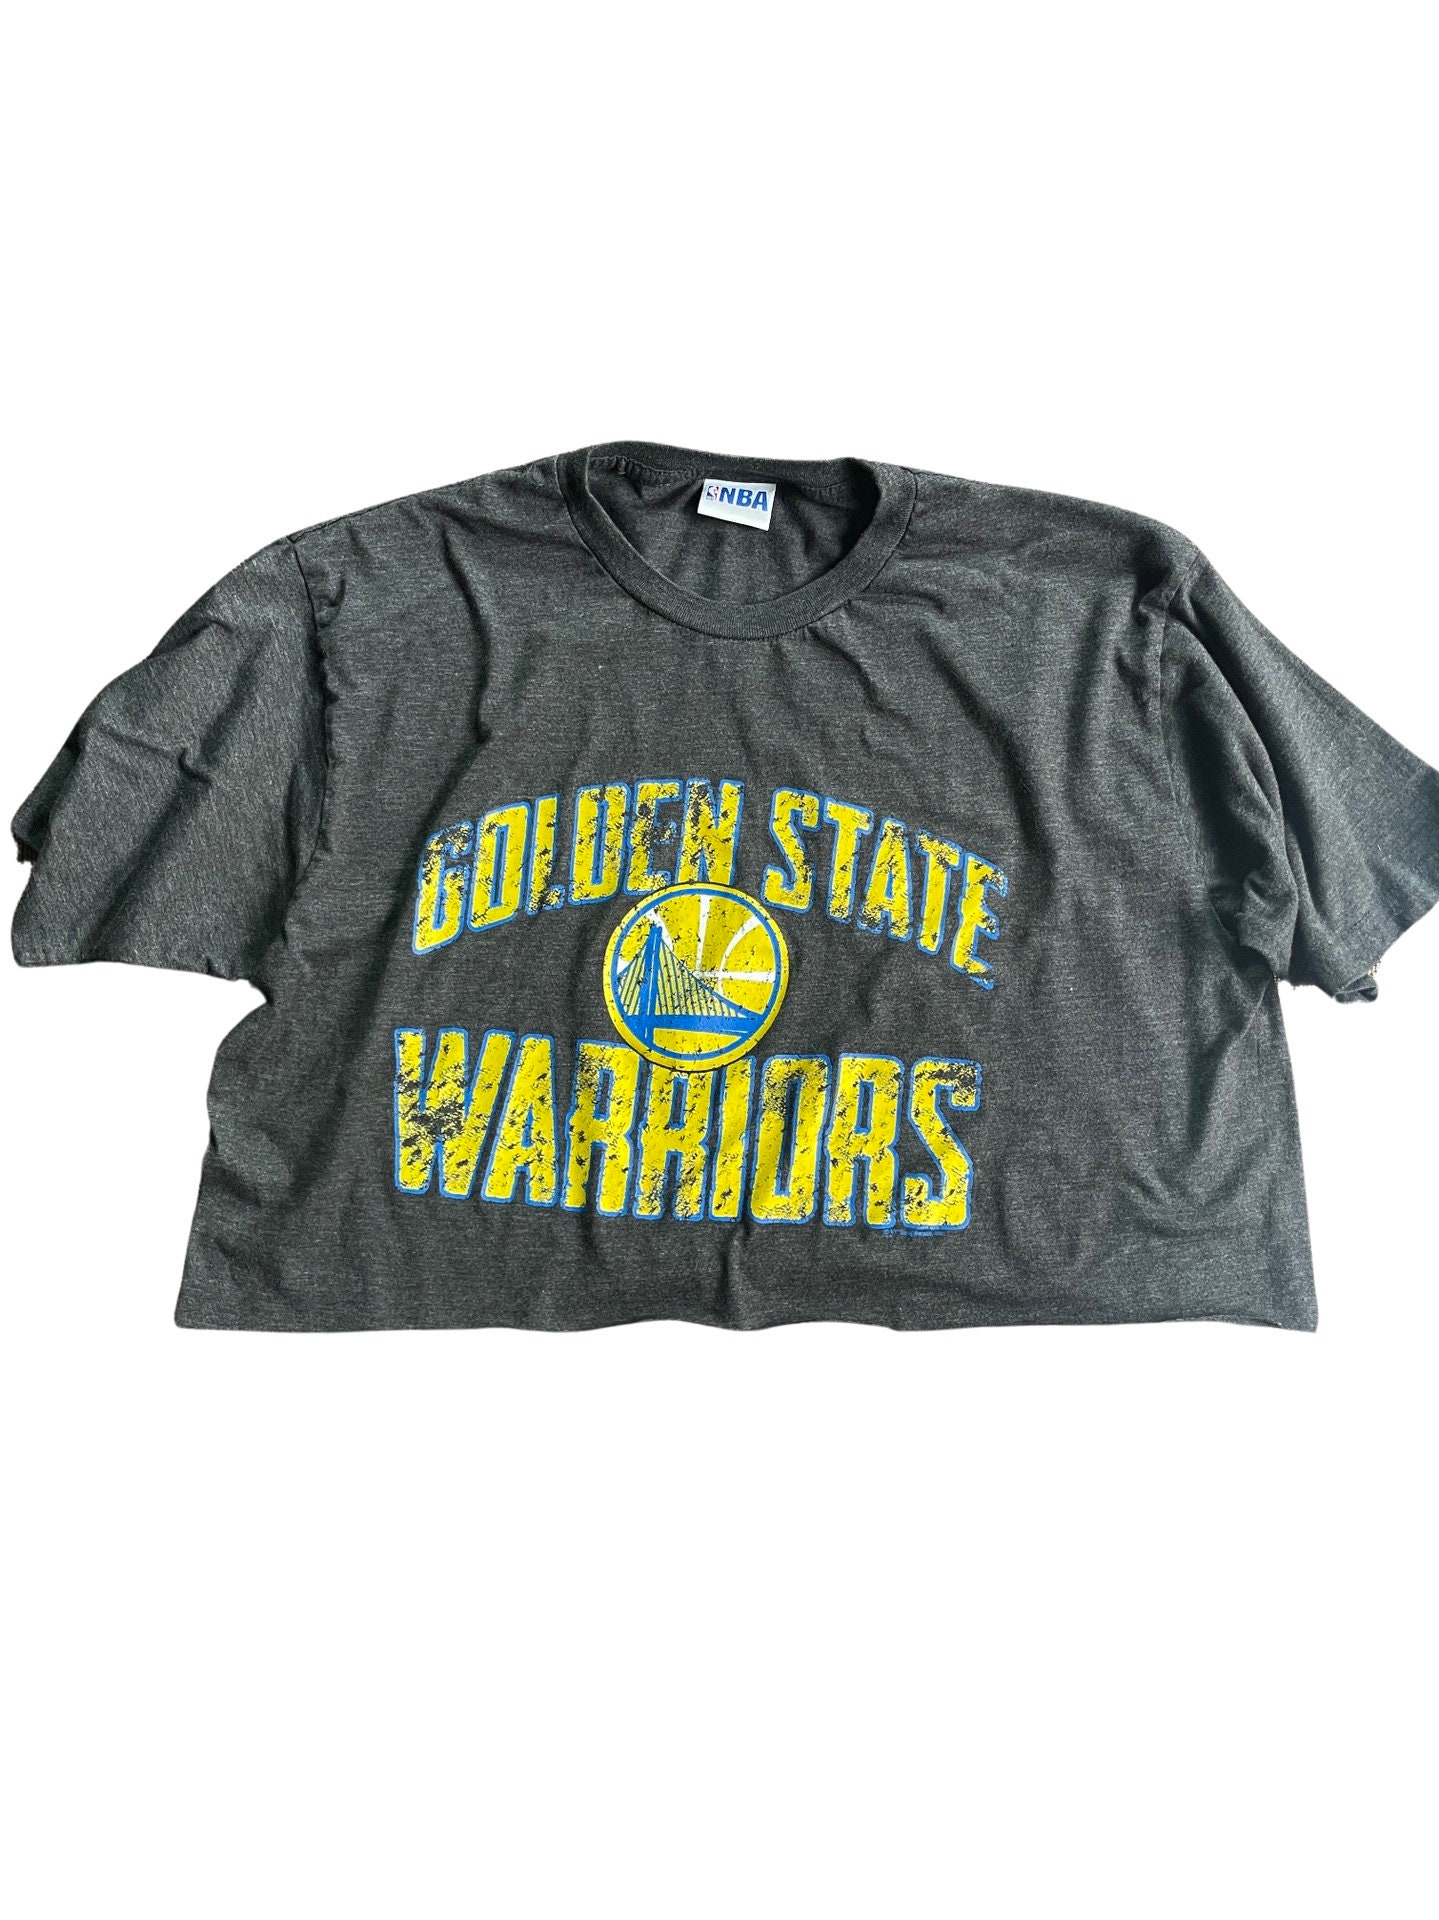 Teen Boy's Black NBA Golden State Warriors T-shirt